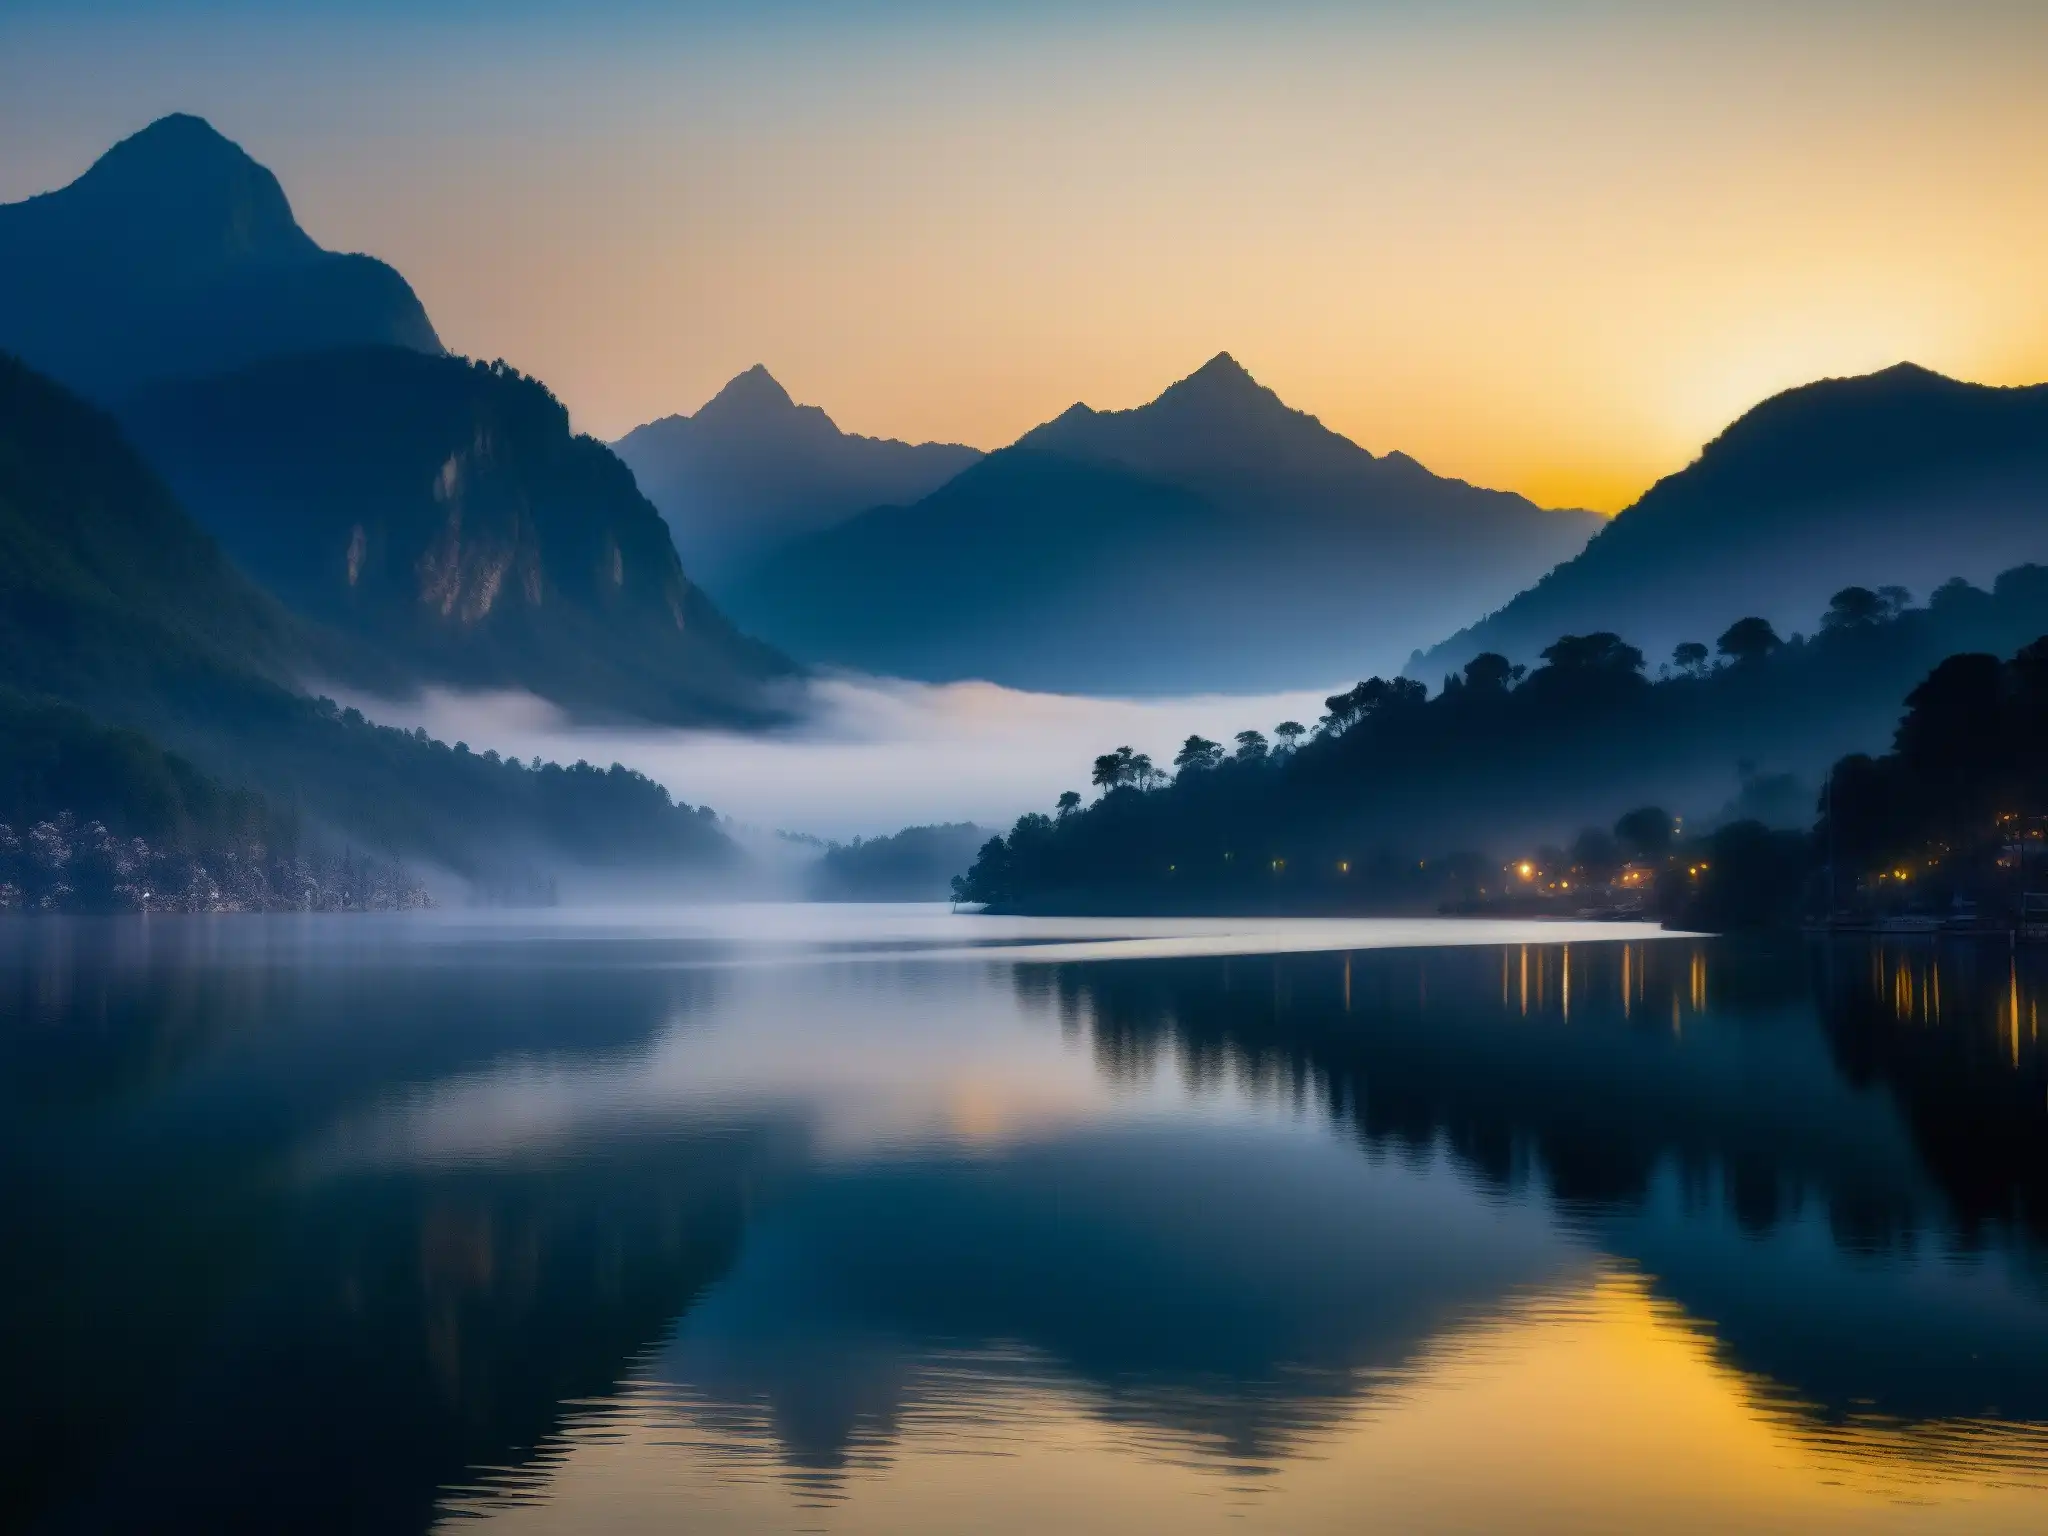 Misterio y encanto en la serena Dama del Lago Nainital al anochecer, con montañas reflejadas en las tranquilas aguas